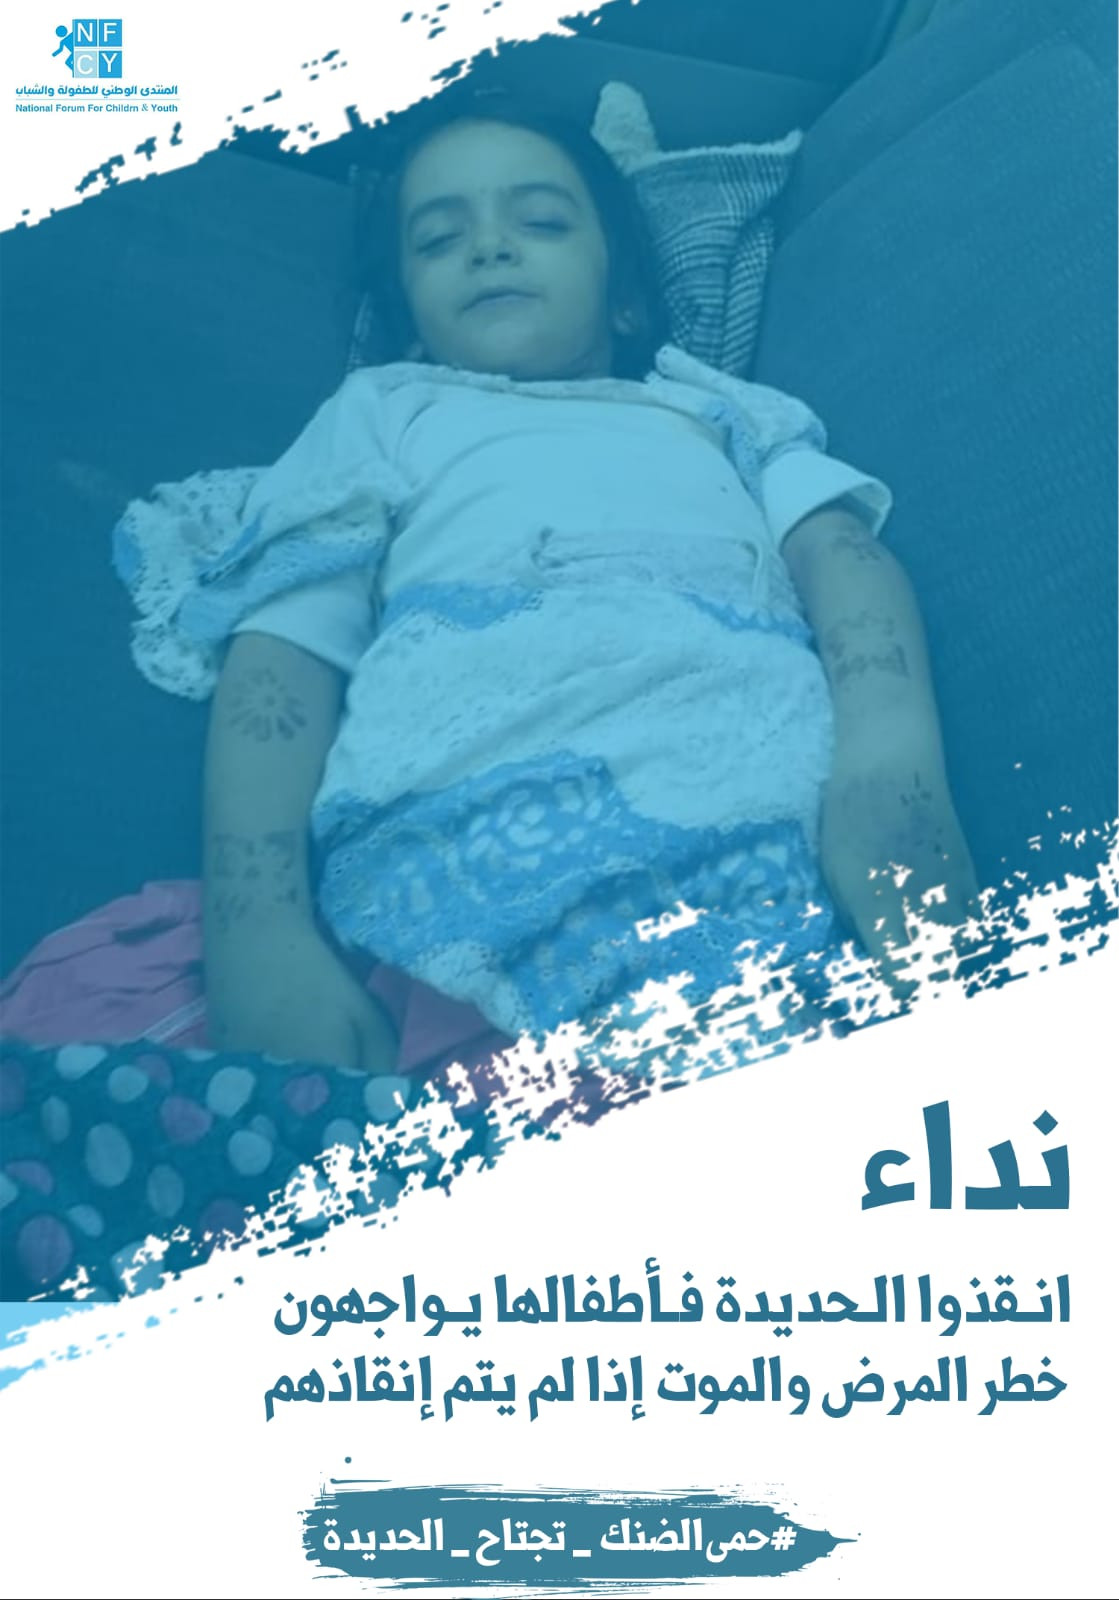 منظمة (NFCY) حمى الضنك والملاريا تحصد أرواح المواطنين في المحافظات اليمنية